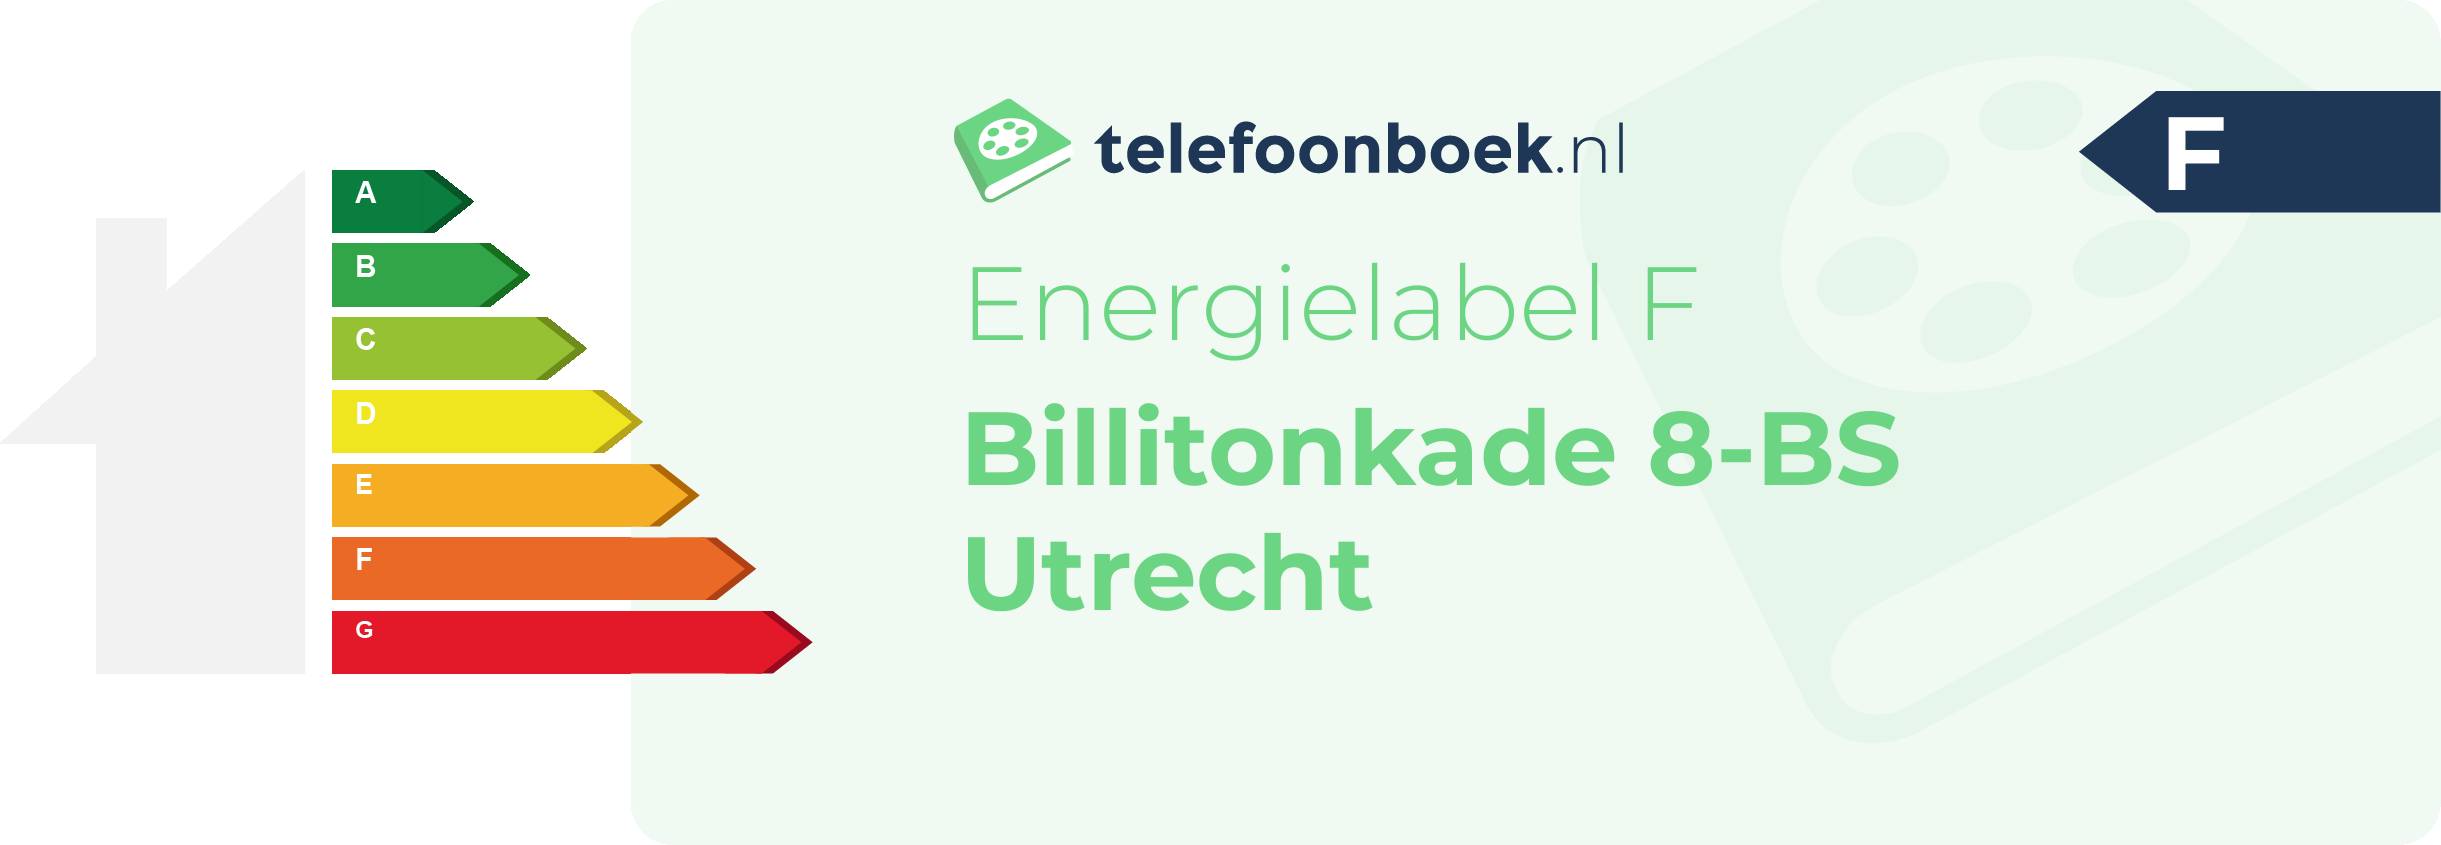 Energielabel Billitonkade 8-BS Utrecht